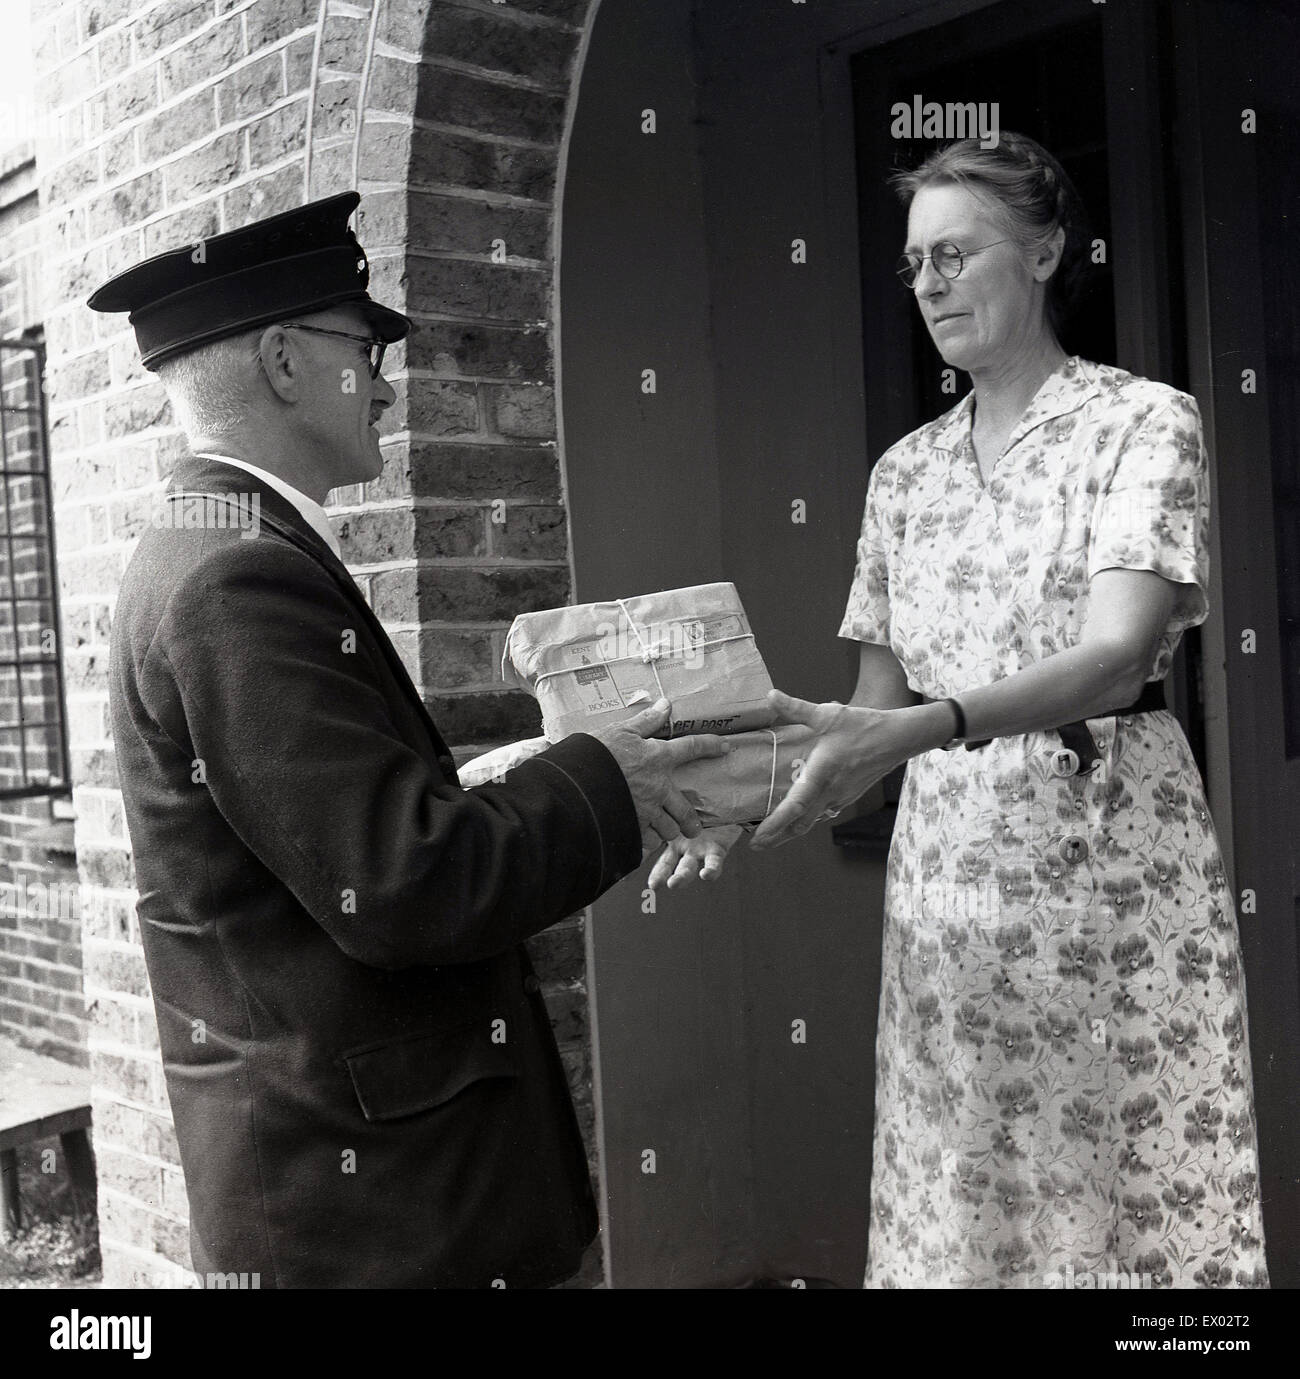 England der 1950er Jahre. Frau am Eingang zum Haus dauert die Lieferung von zwei kleinen Parzellen in diesem historischen Bild von J Allan Cash. Stockfoto